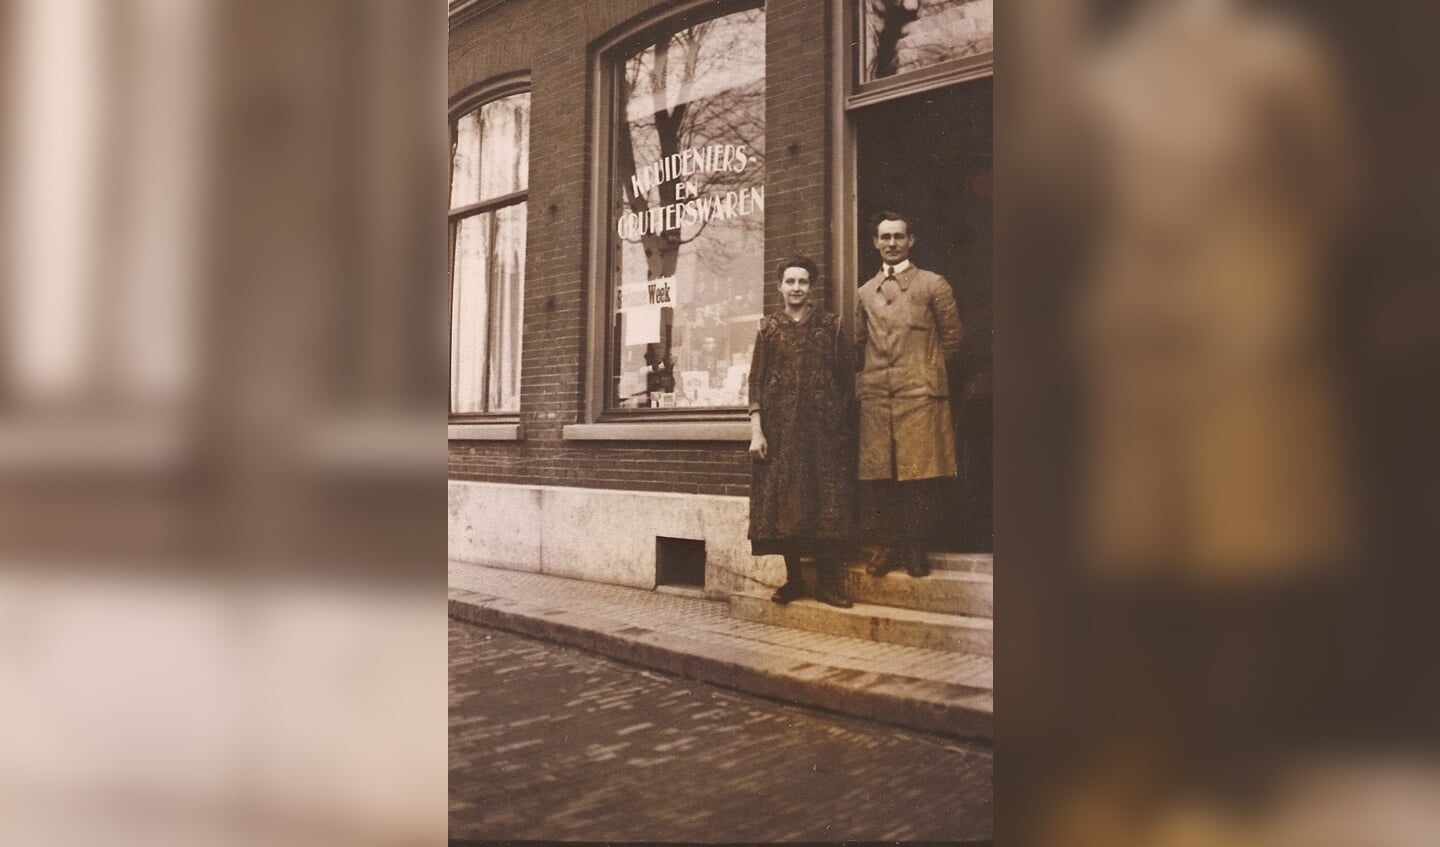 Het echtpaar Heijnis in de deur van hun winkel.